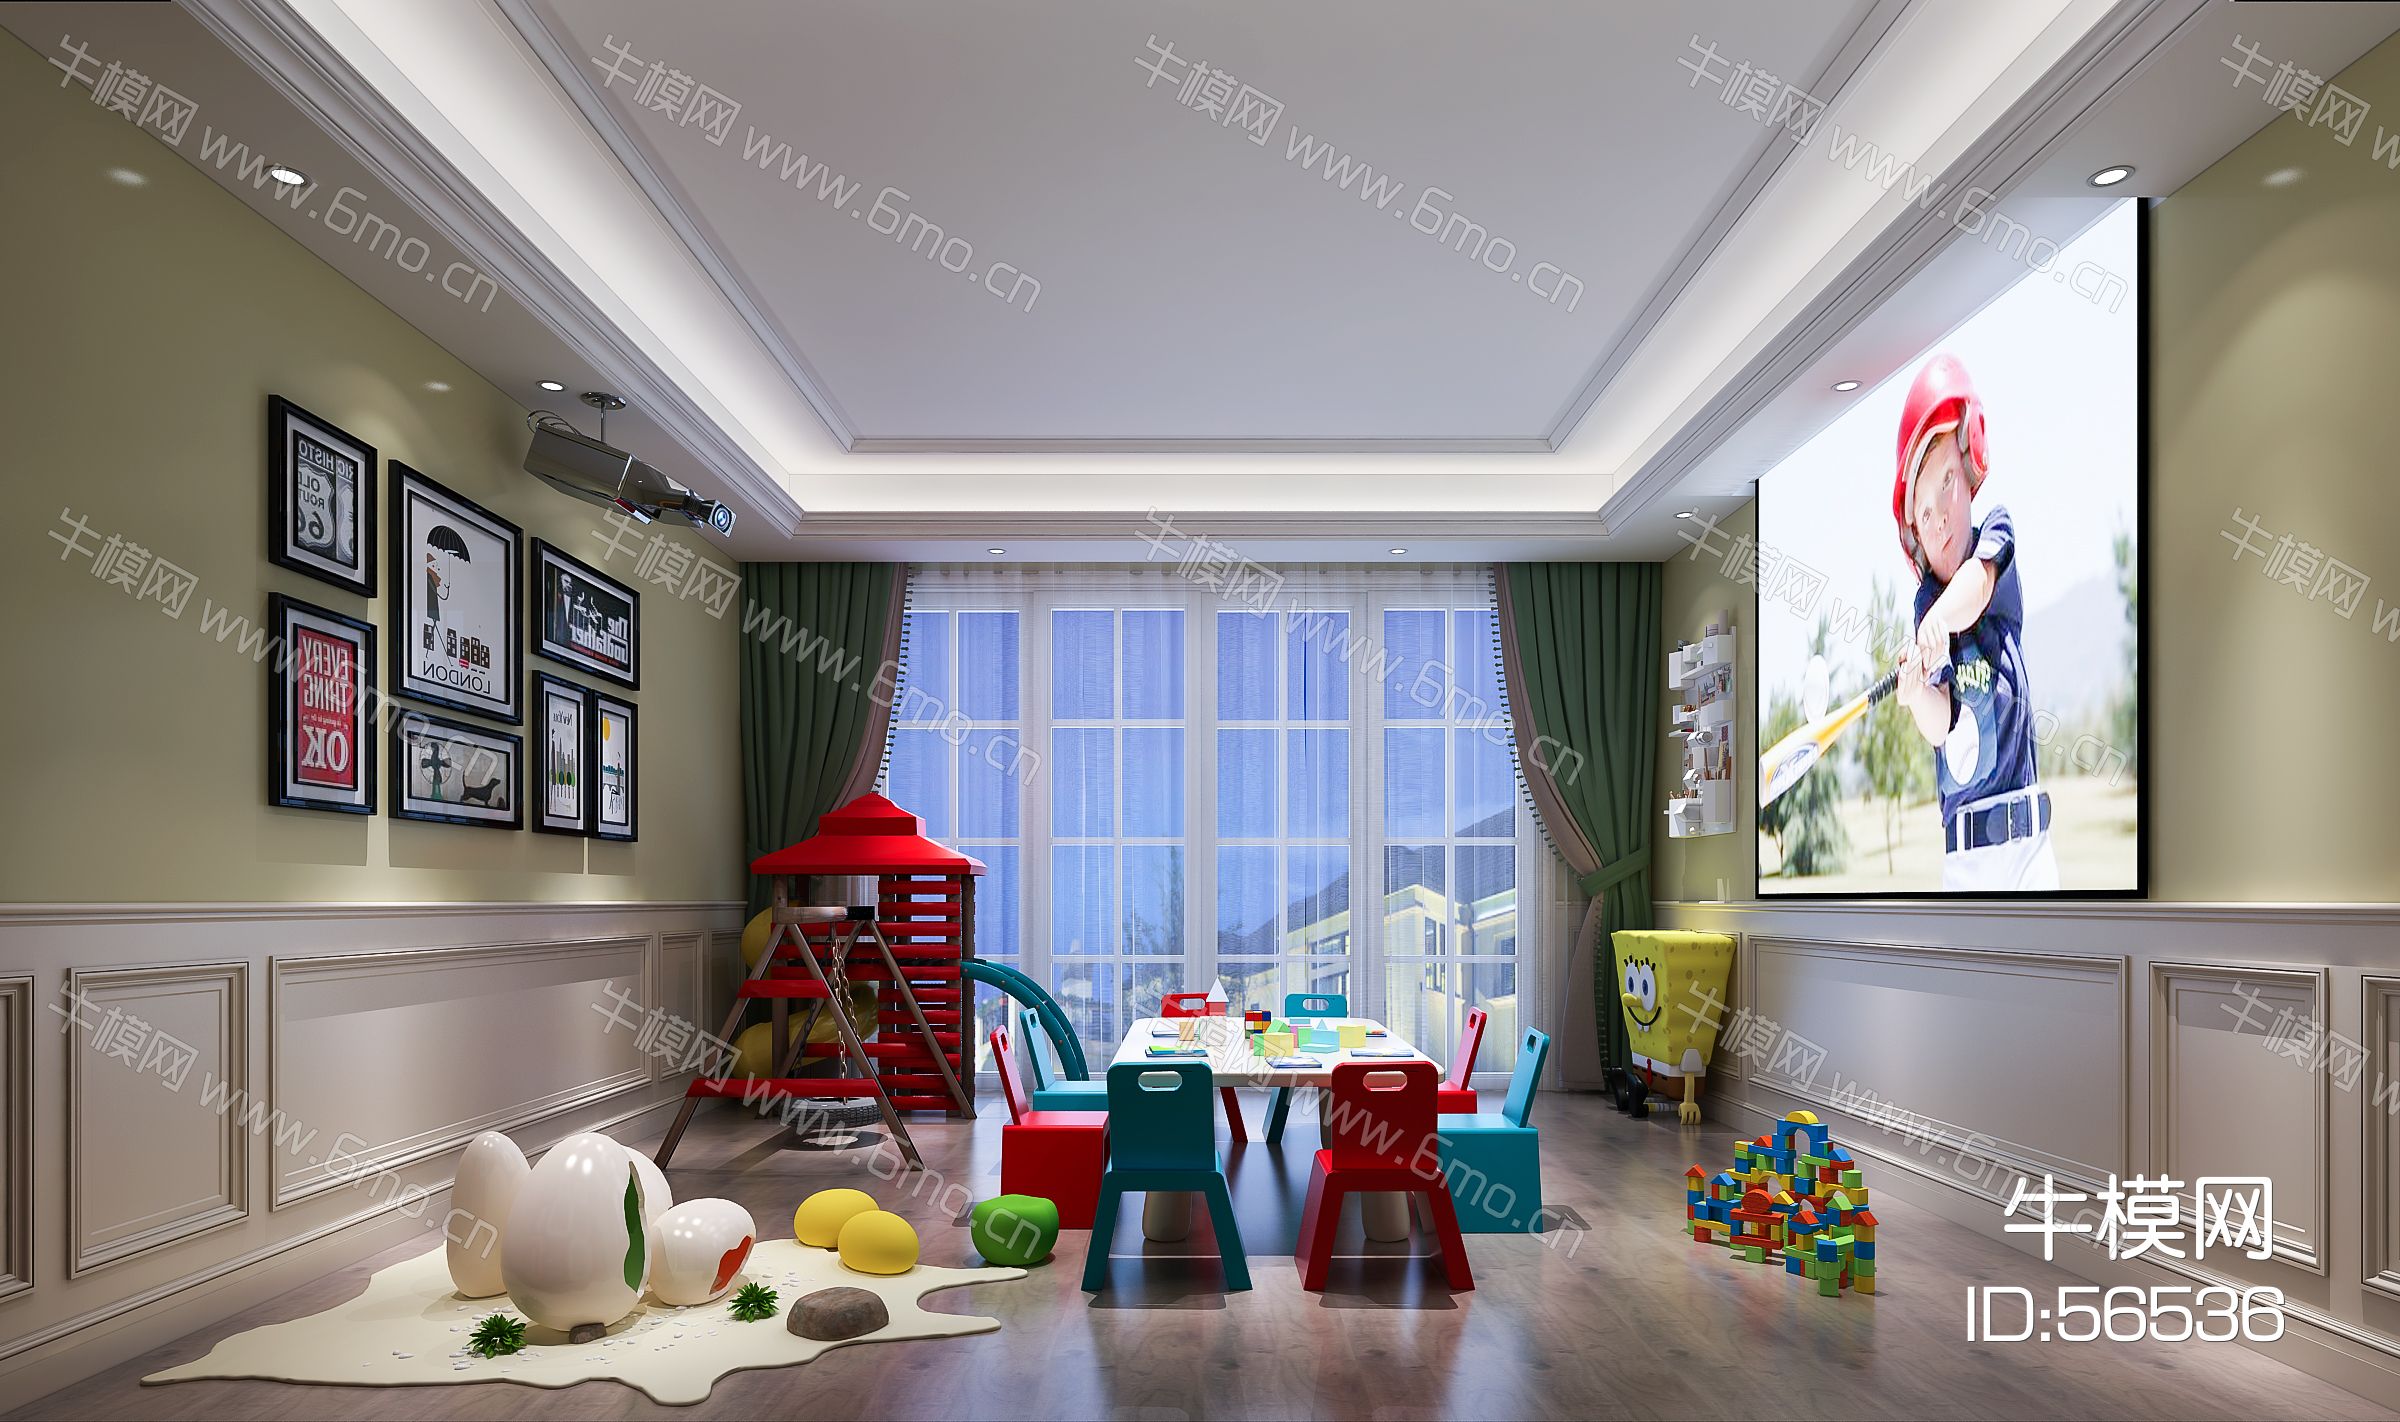 现代儿童活动室 休闲娱乐室 桌椅 玩具 滑梯 挂画 显示屏